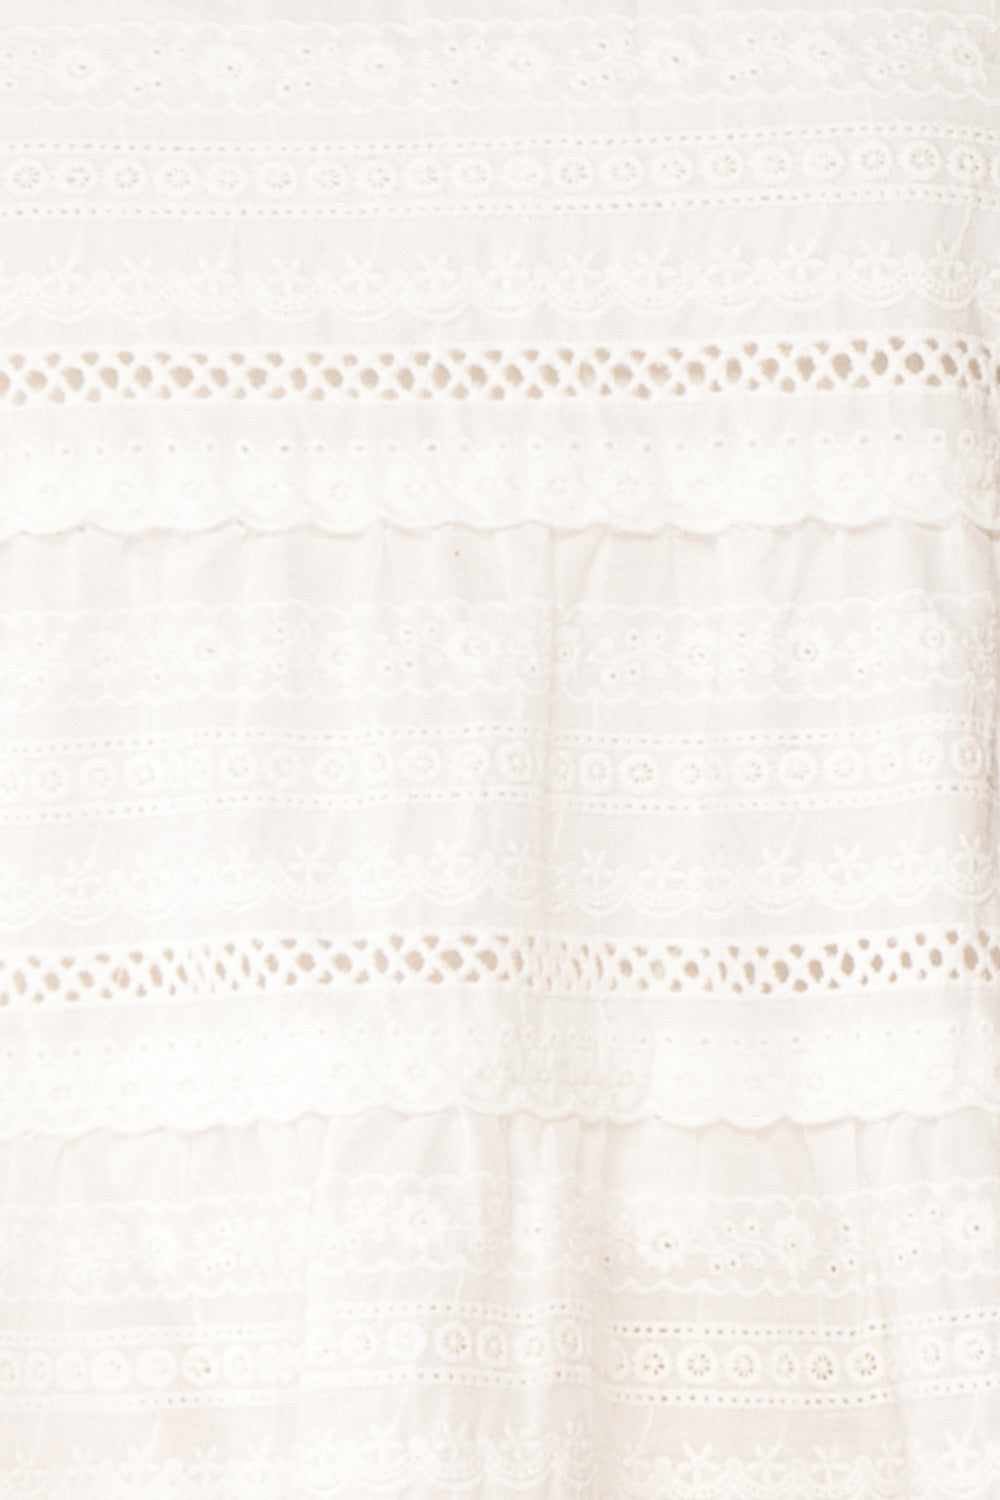 Pianella White Cropped Openwork Cami | Boutique 1861 fabric